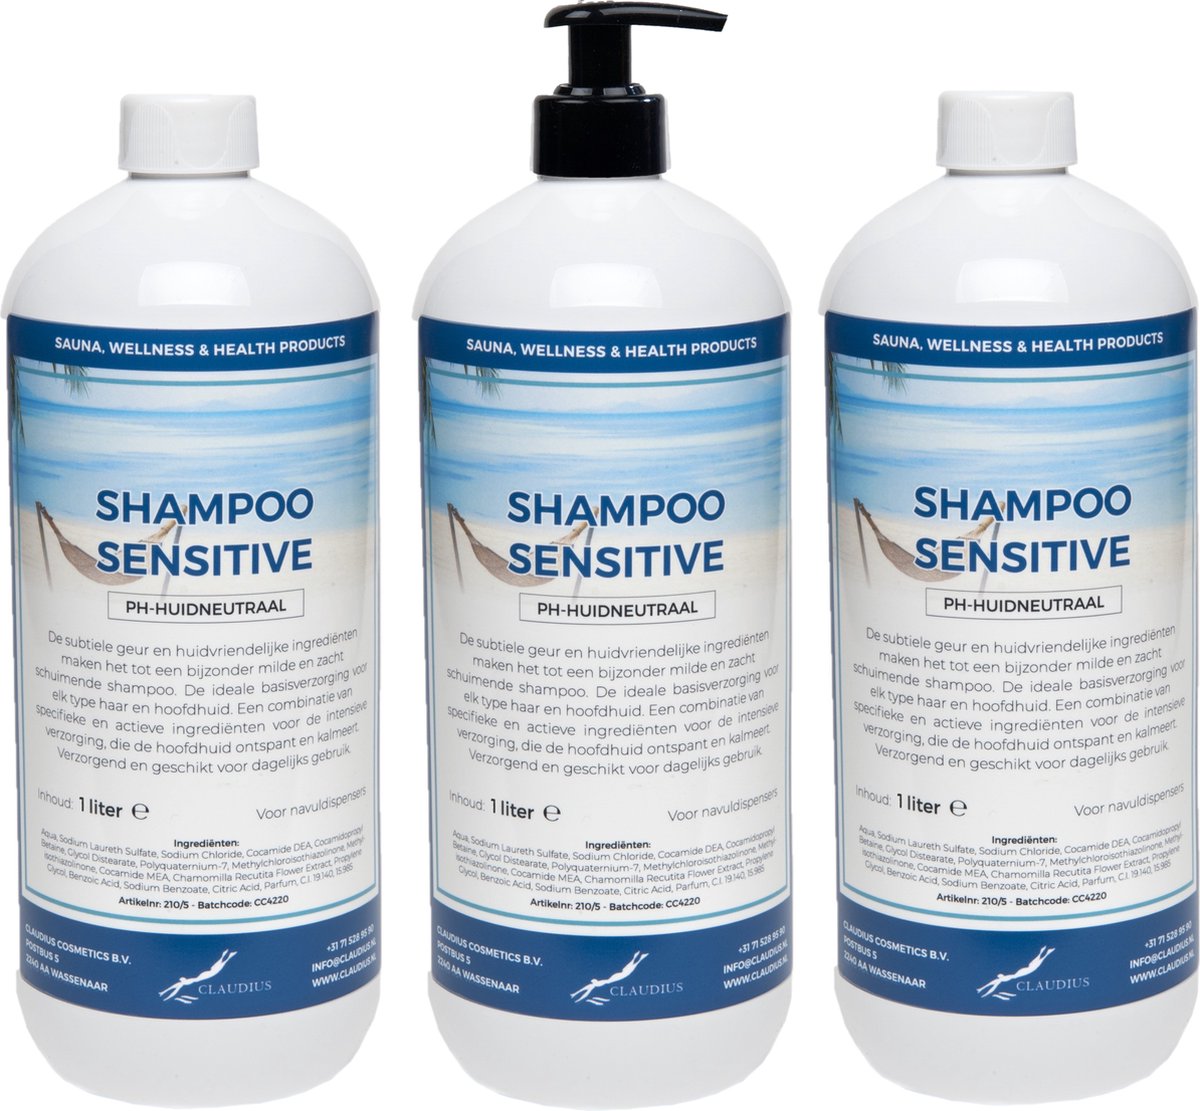 Shampoo Sensitive 1 liter - set van 3 stuks - met gratis pomp